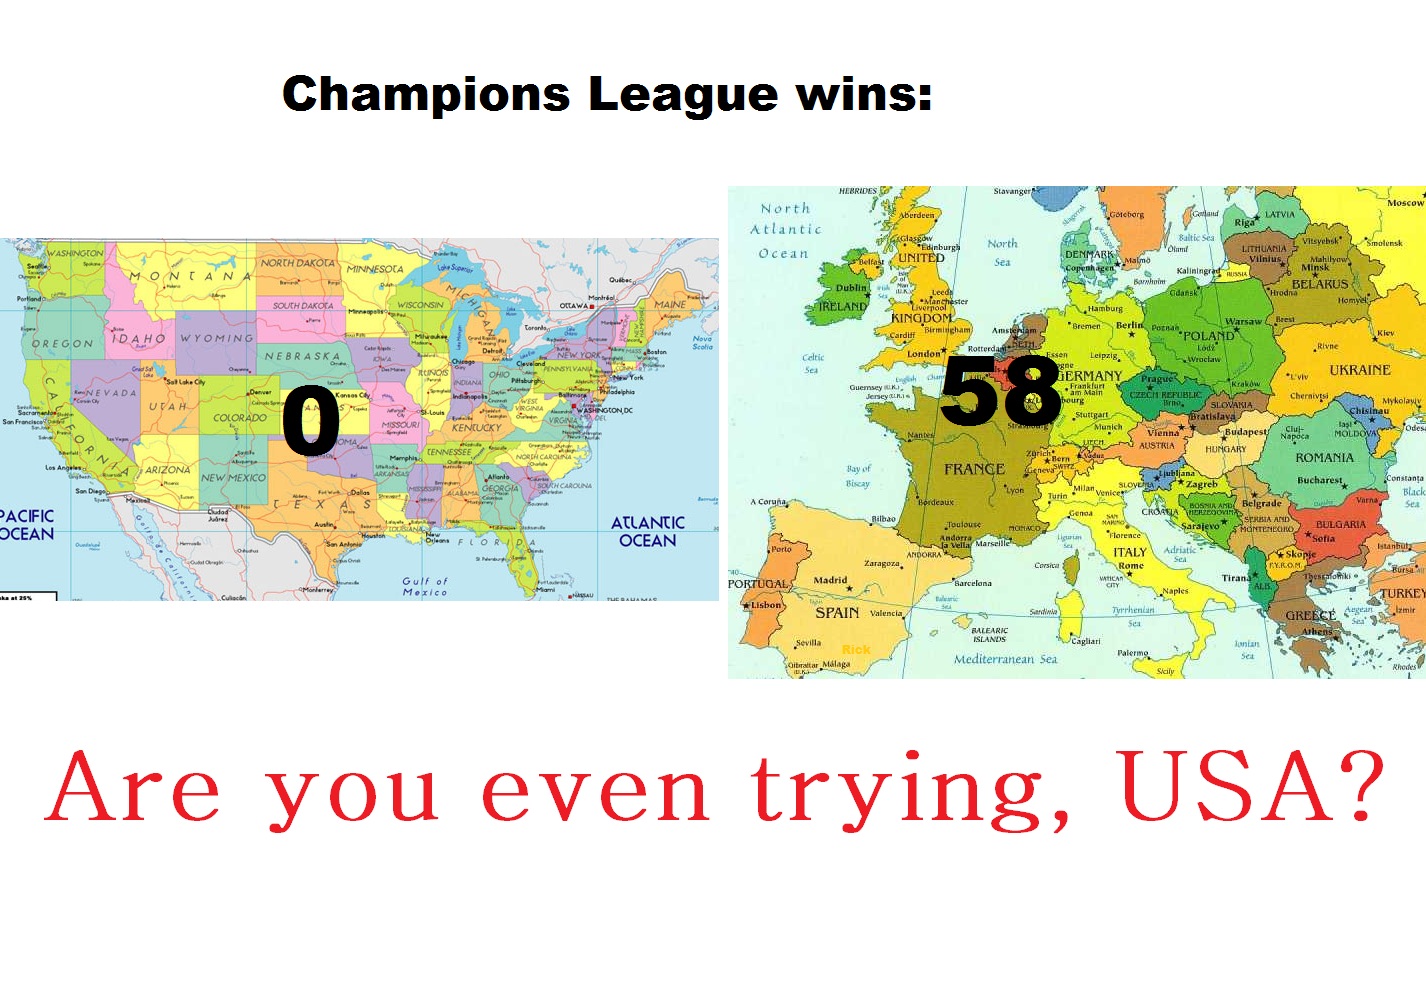 Europe>USA